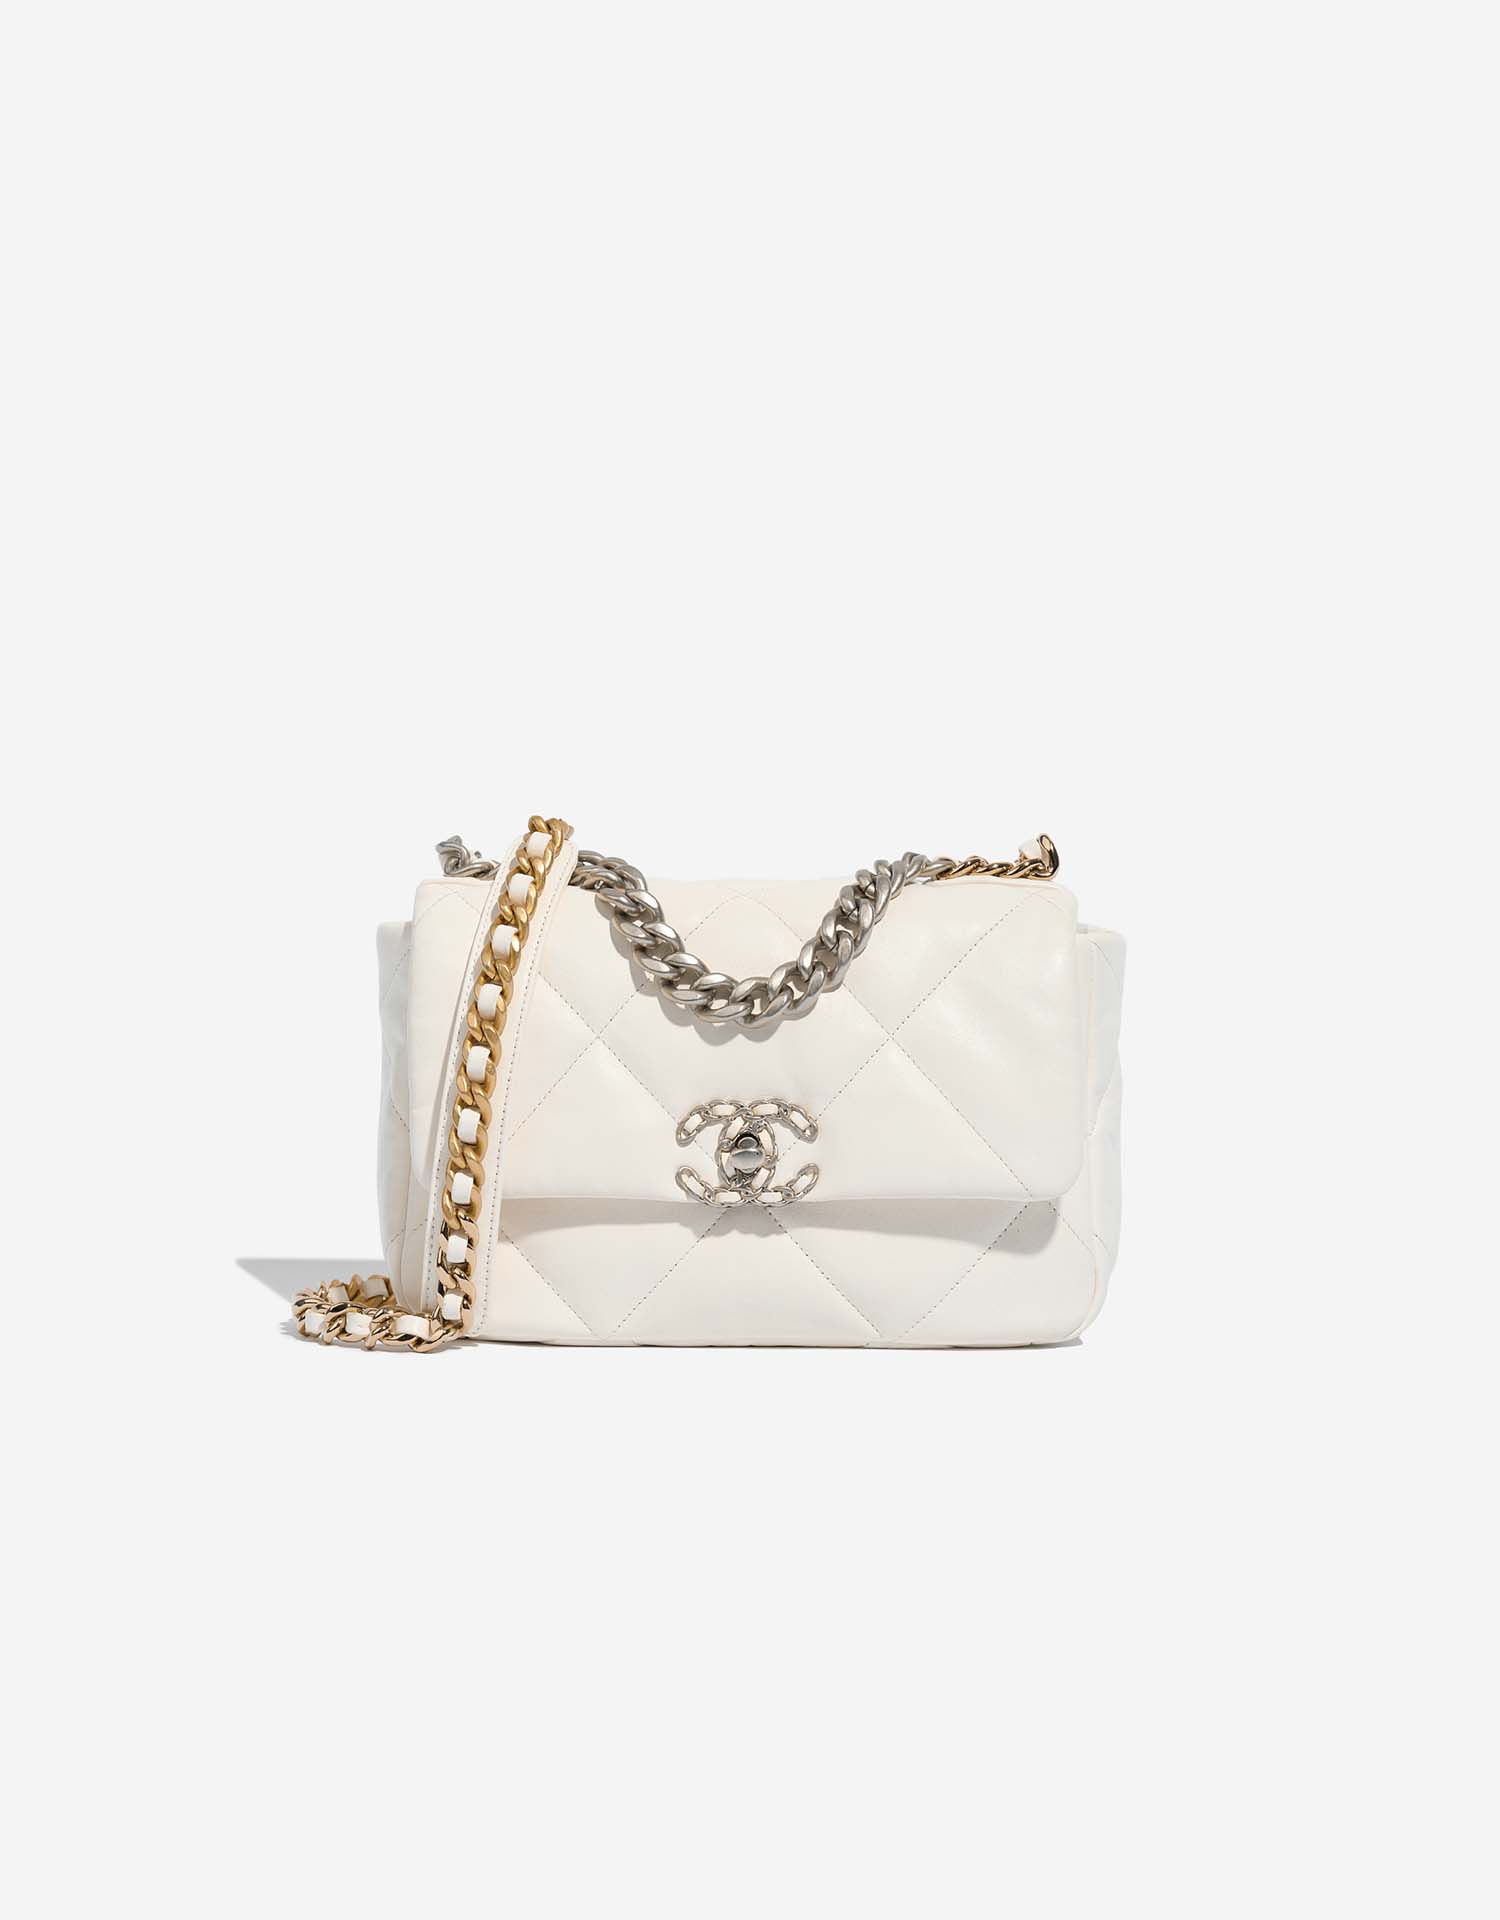 The Chanel 19 Bag: An Essential Guide | SACLÀB